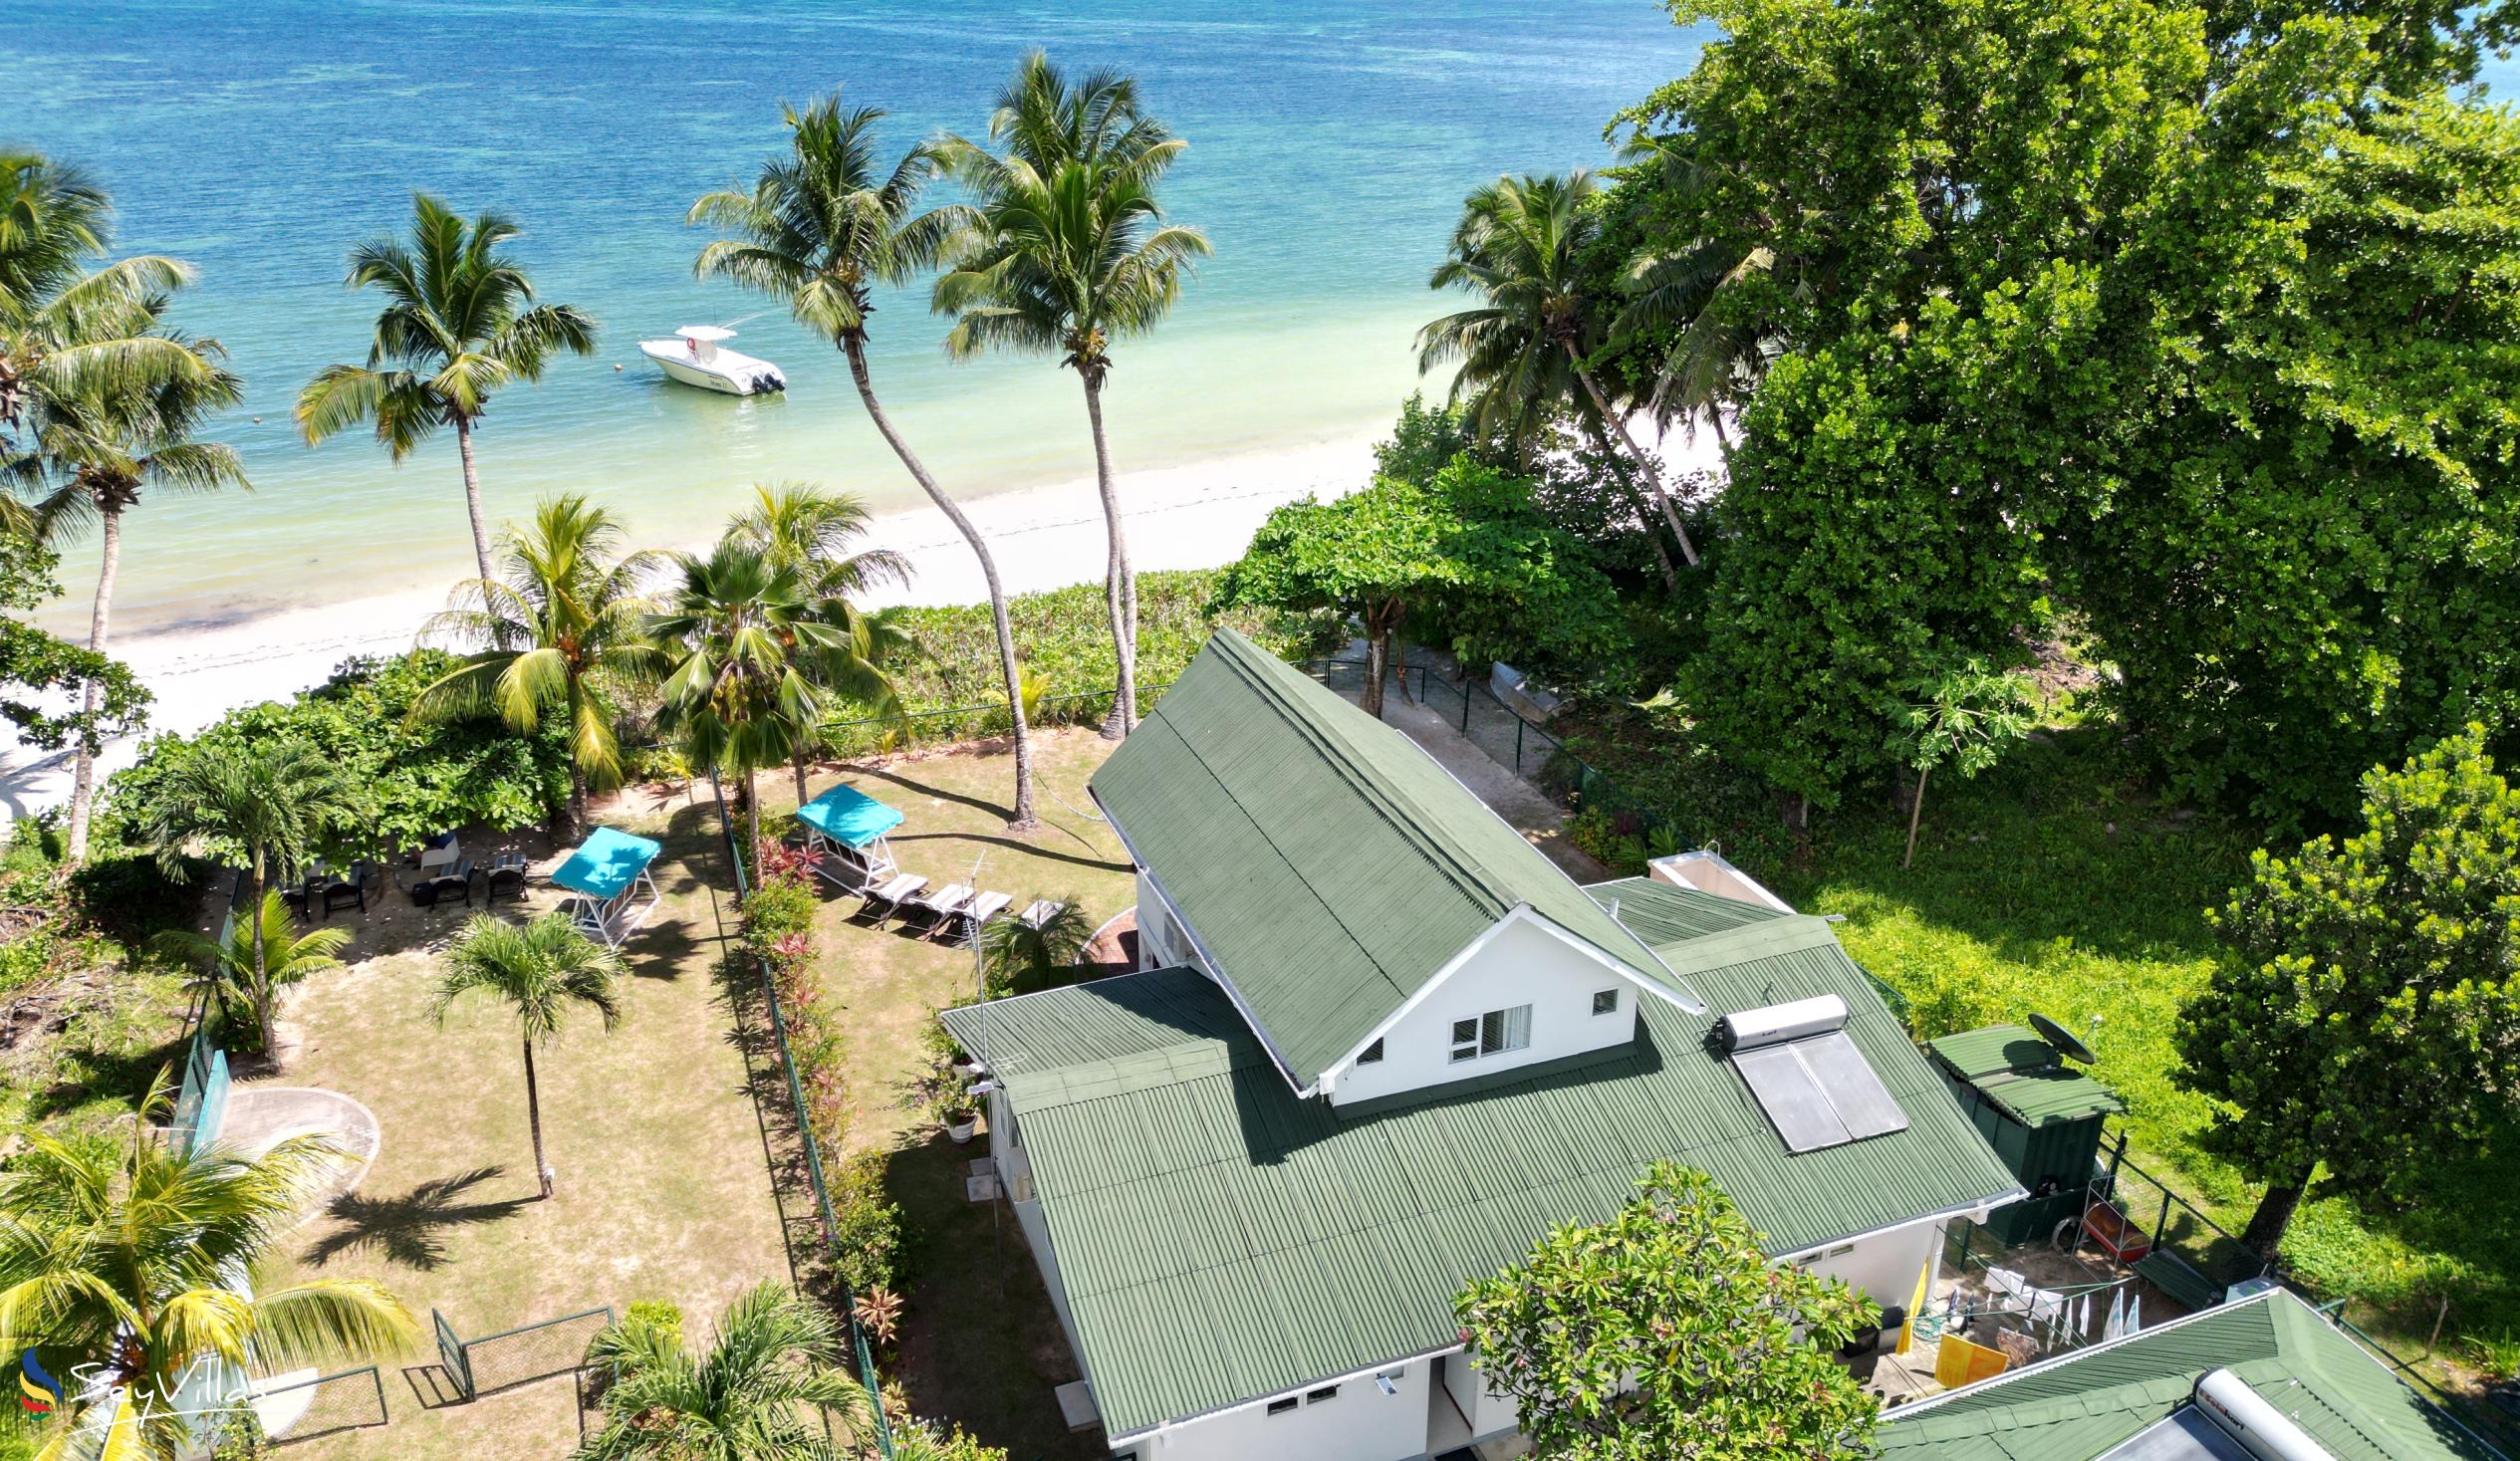 Foto 3: Ocean Villa - Aussenbereich - Praslin (Seychellen)